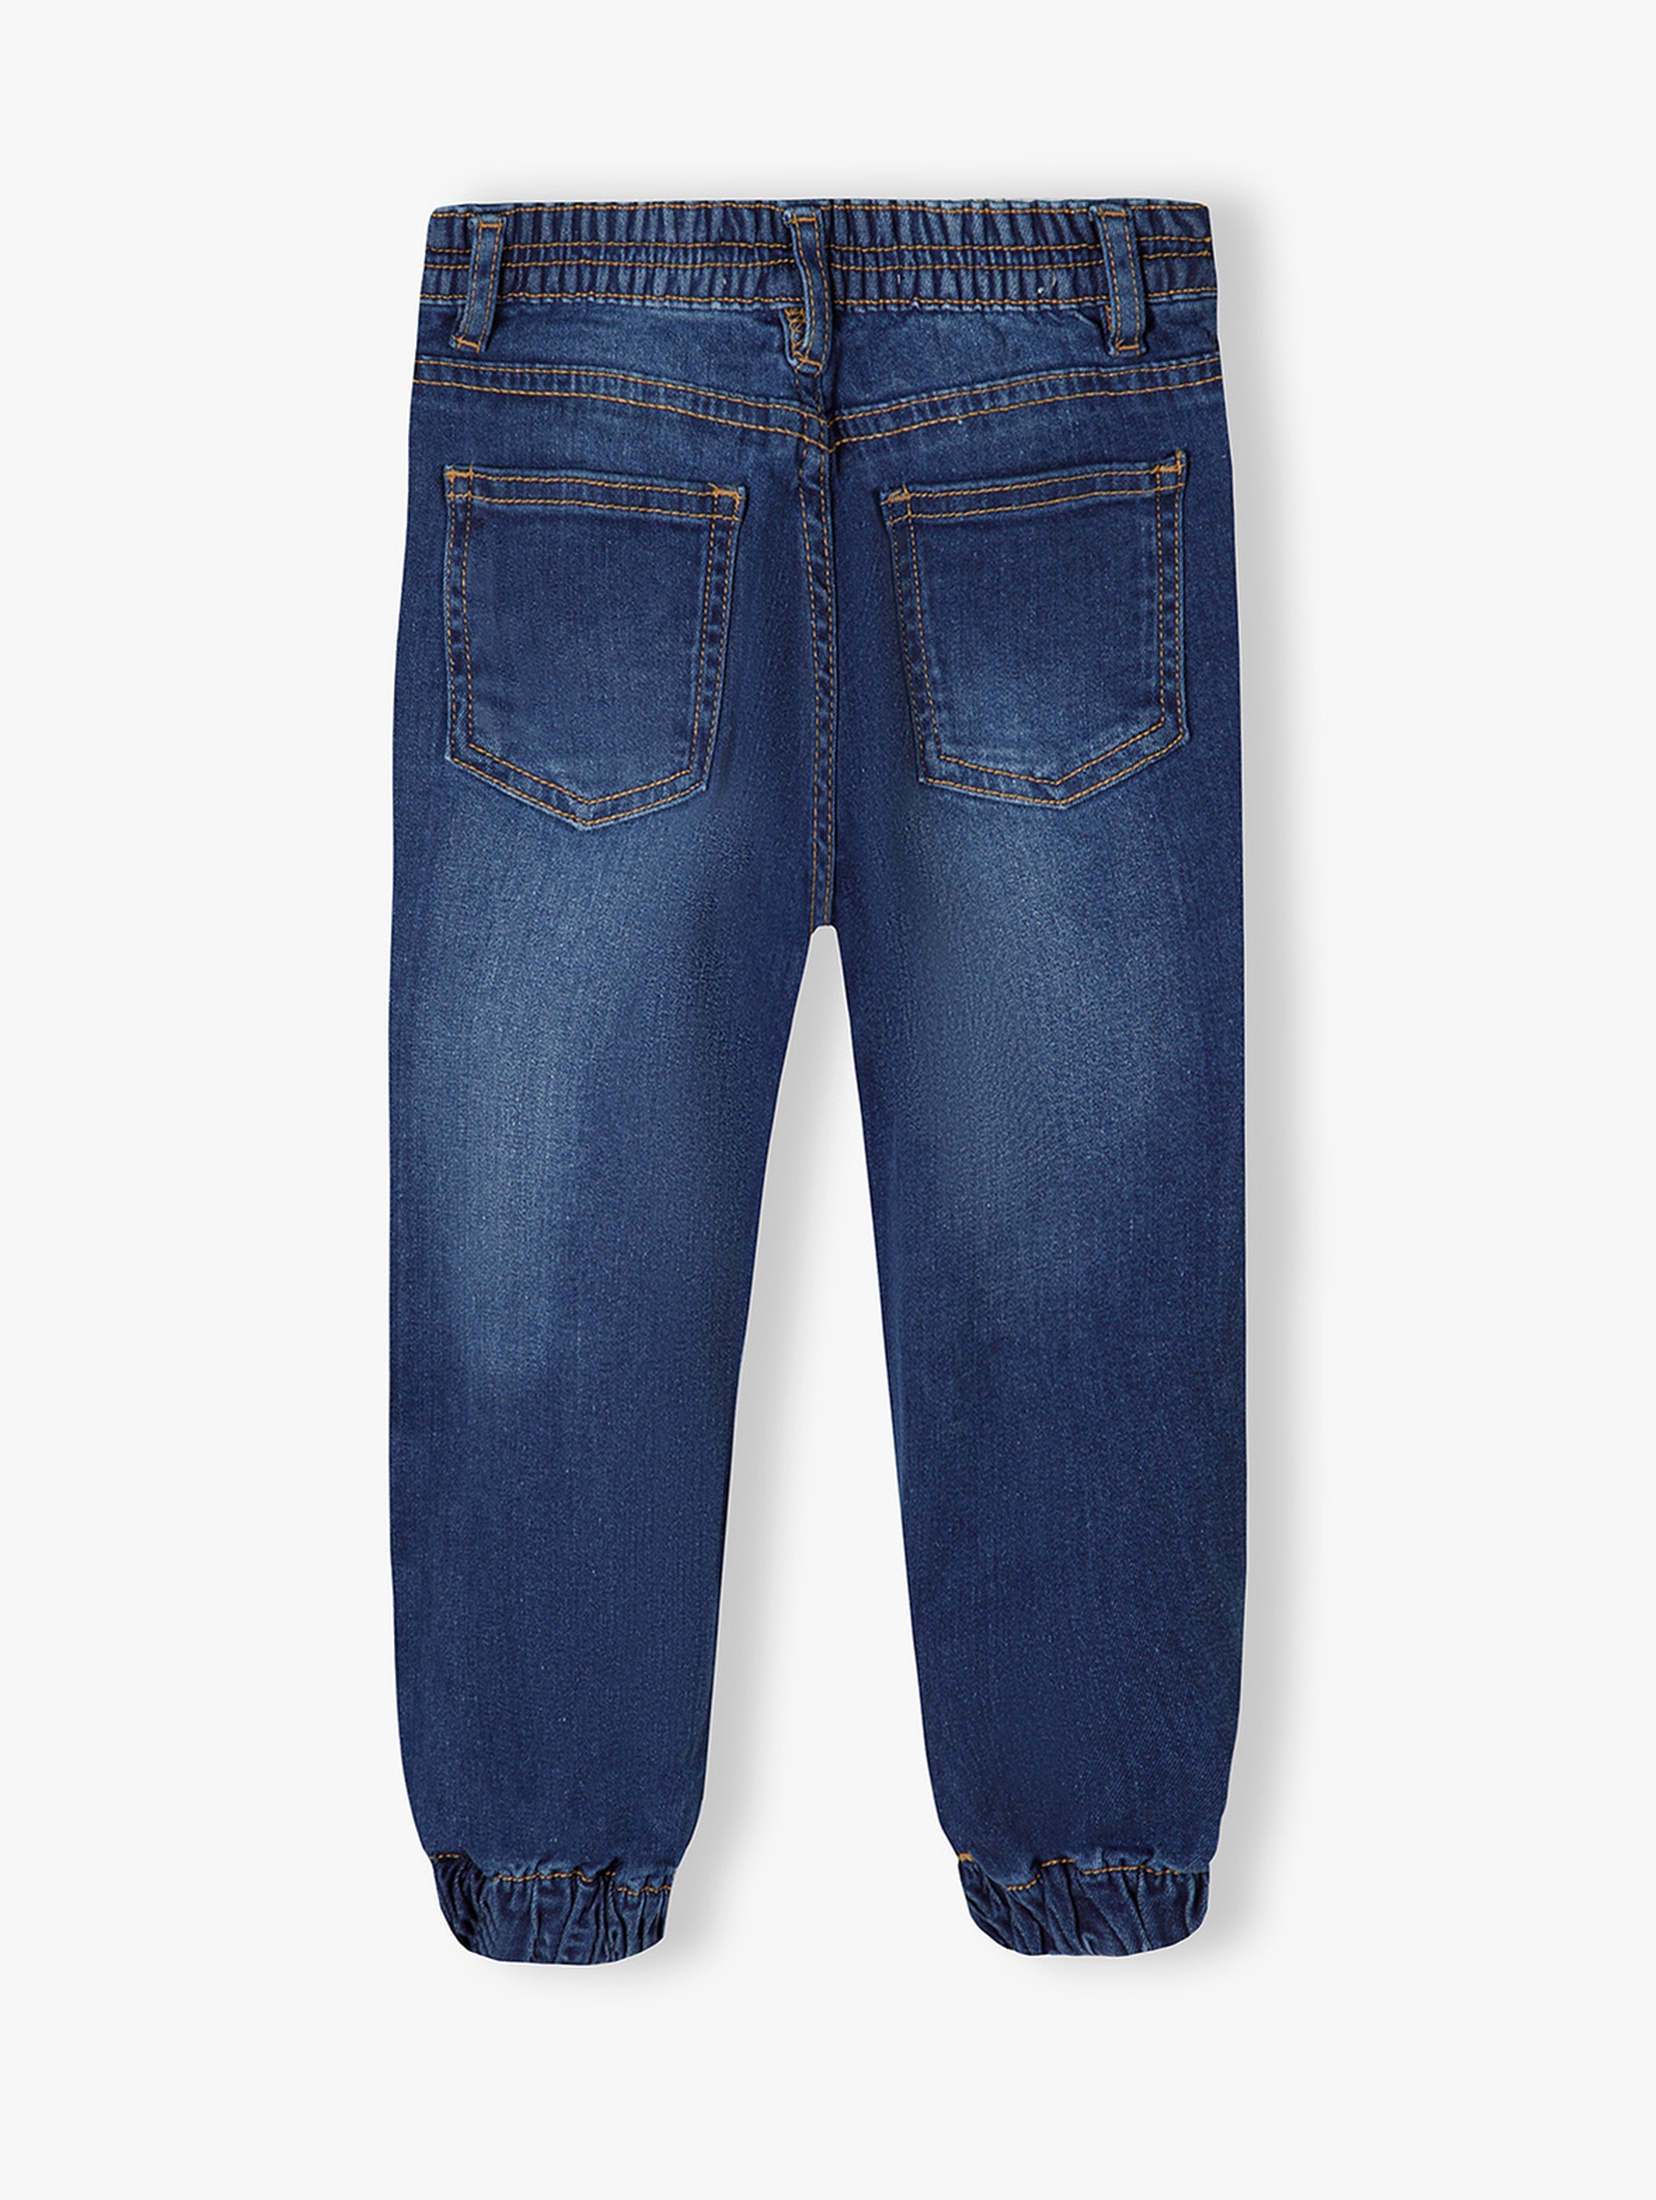 Ciemne spodnie jeansowe typu joggery dziewczęce